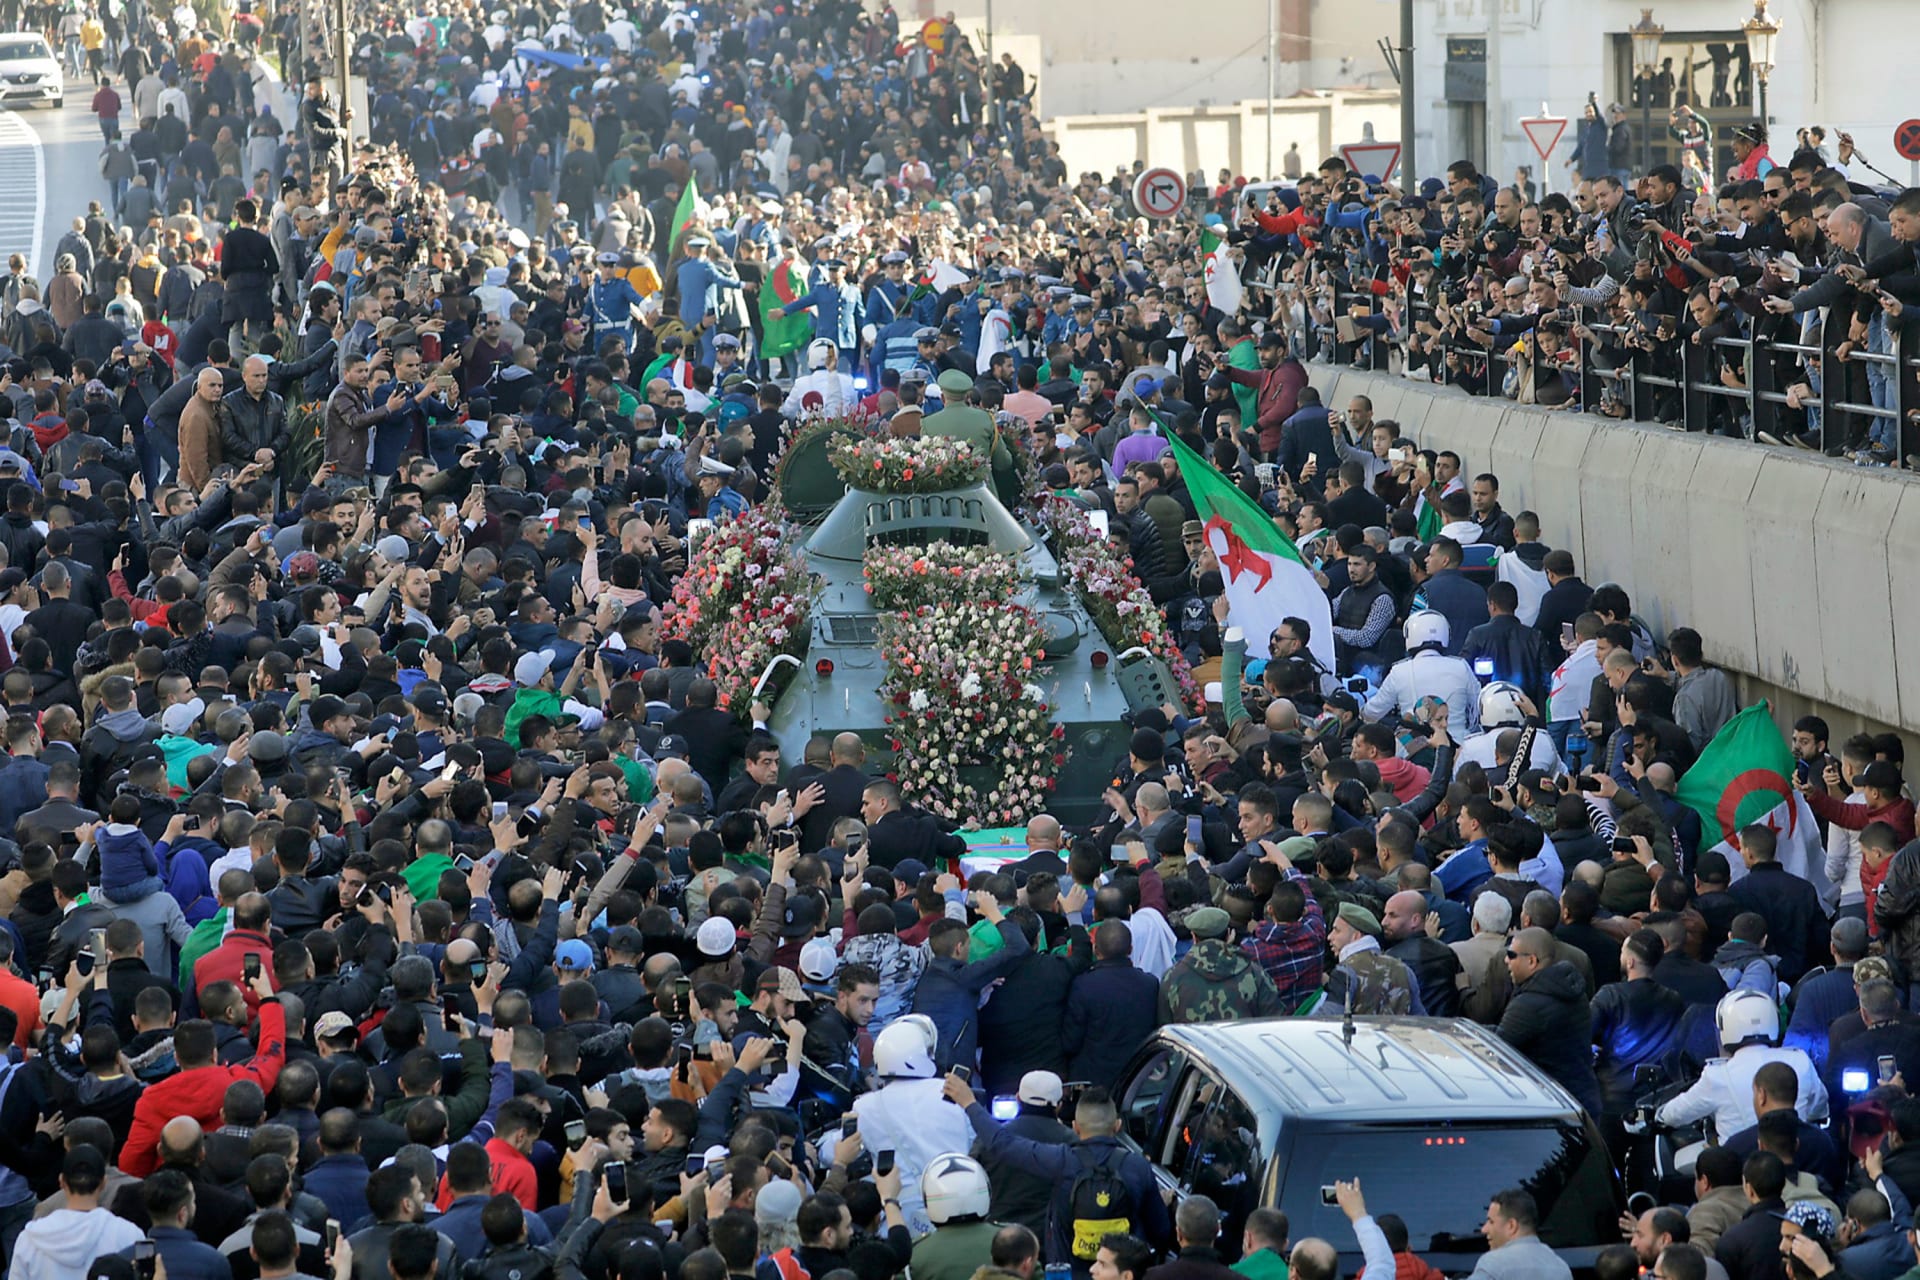  جنازة رئيس أركان الجيش الجزائري أحمد قايد صالح